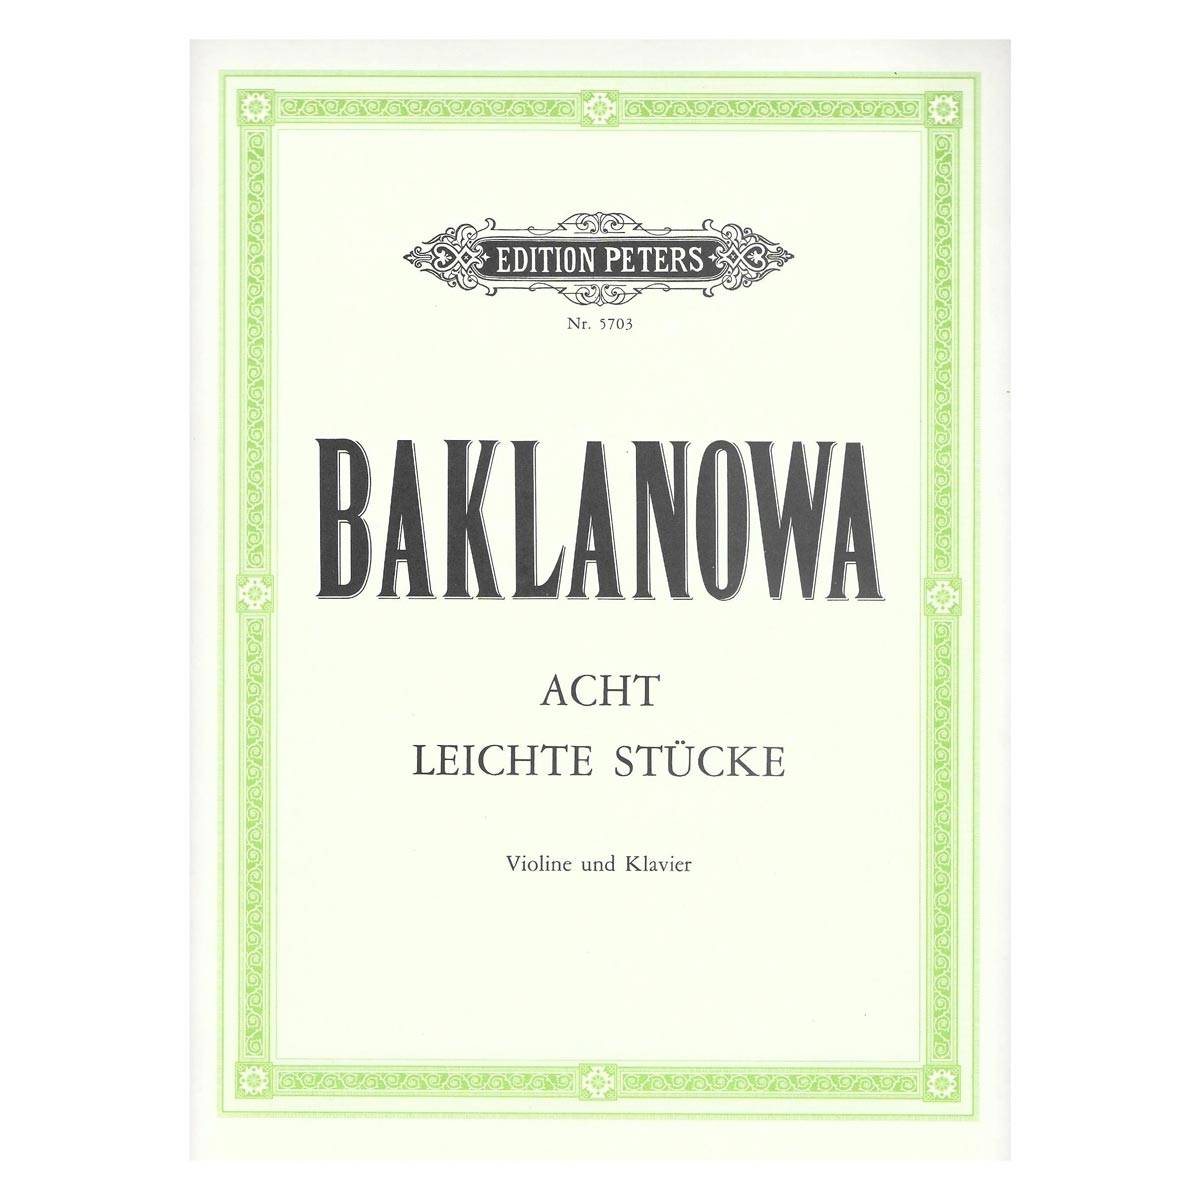 Baklanowa - Acht leichte stucke